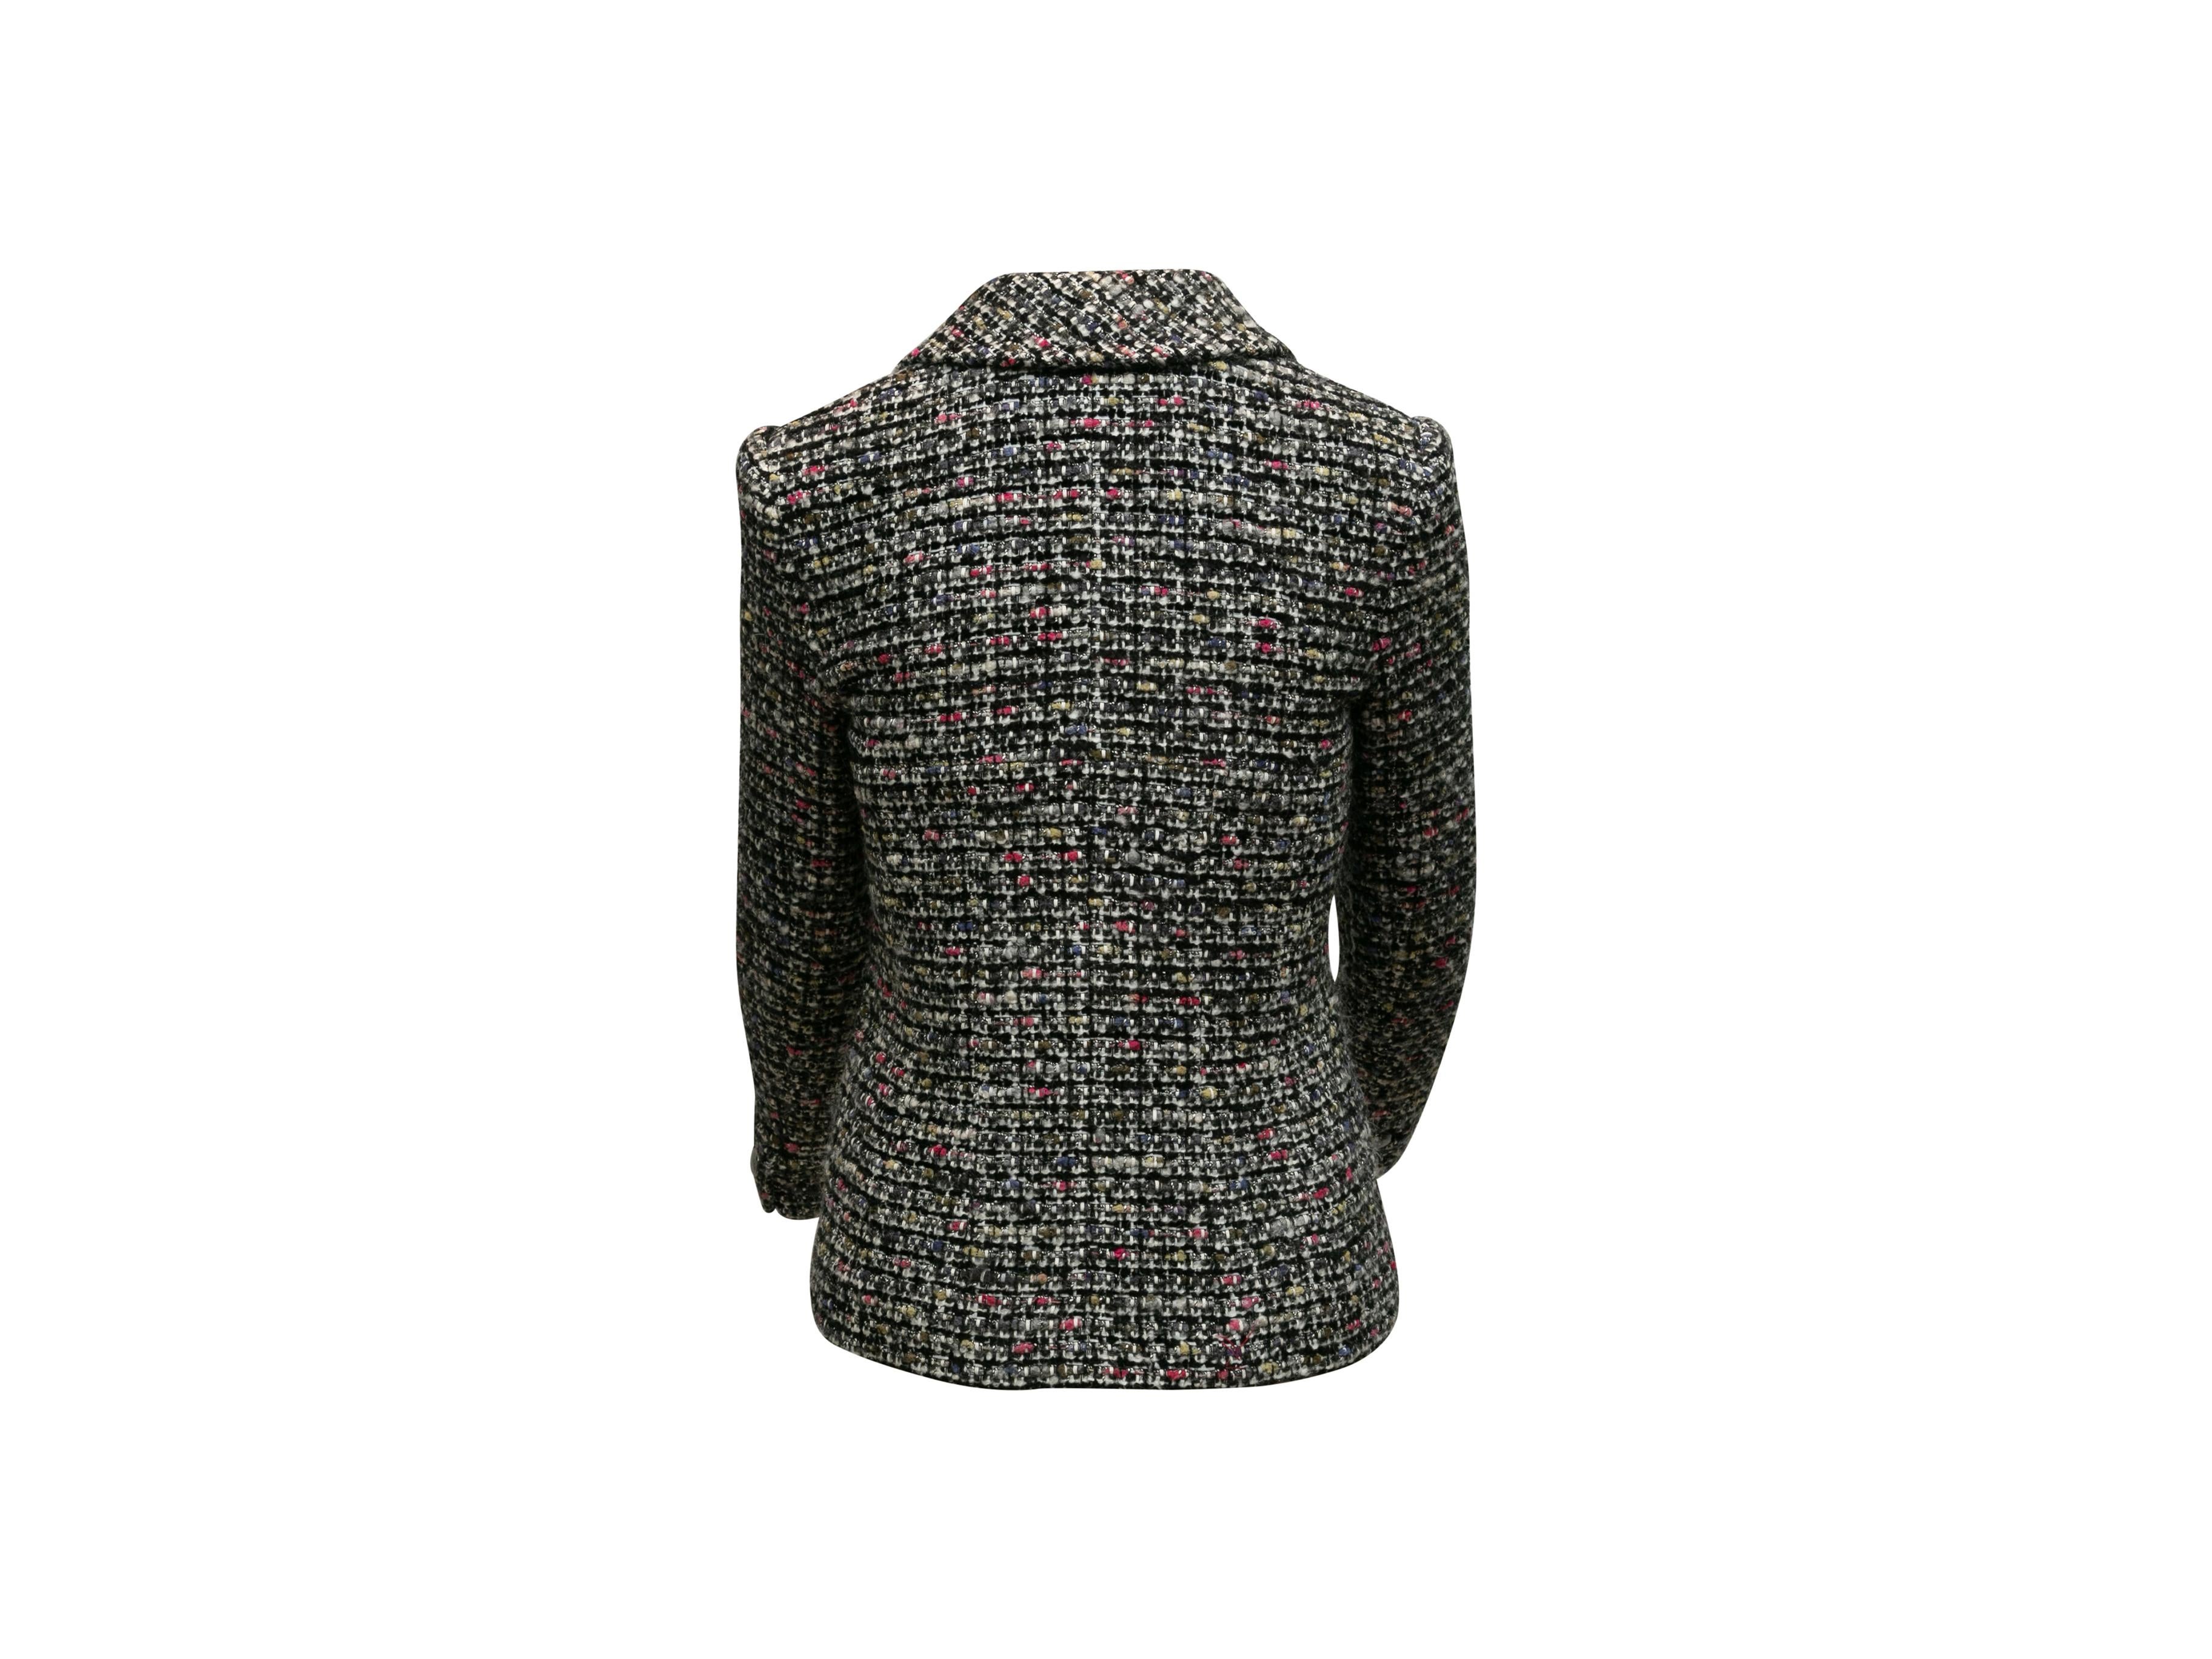 Chanel Black & Multicolor Tweed Blazer 2